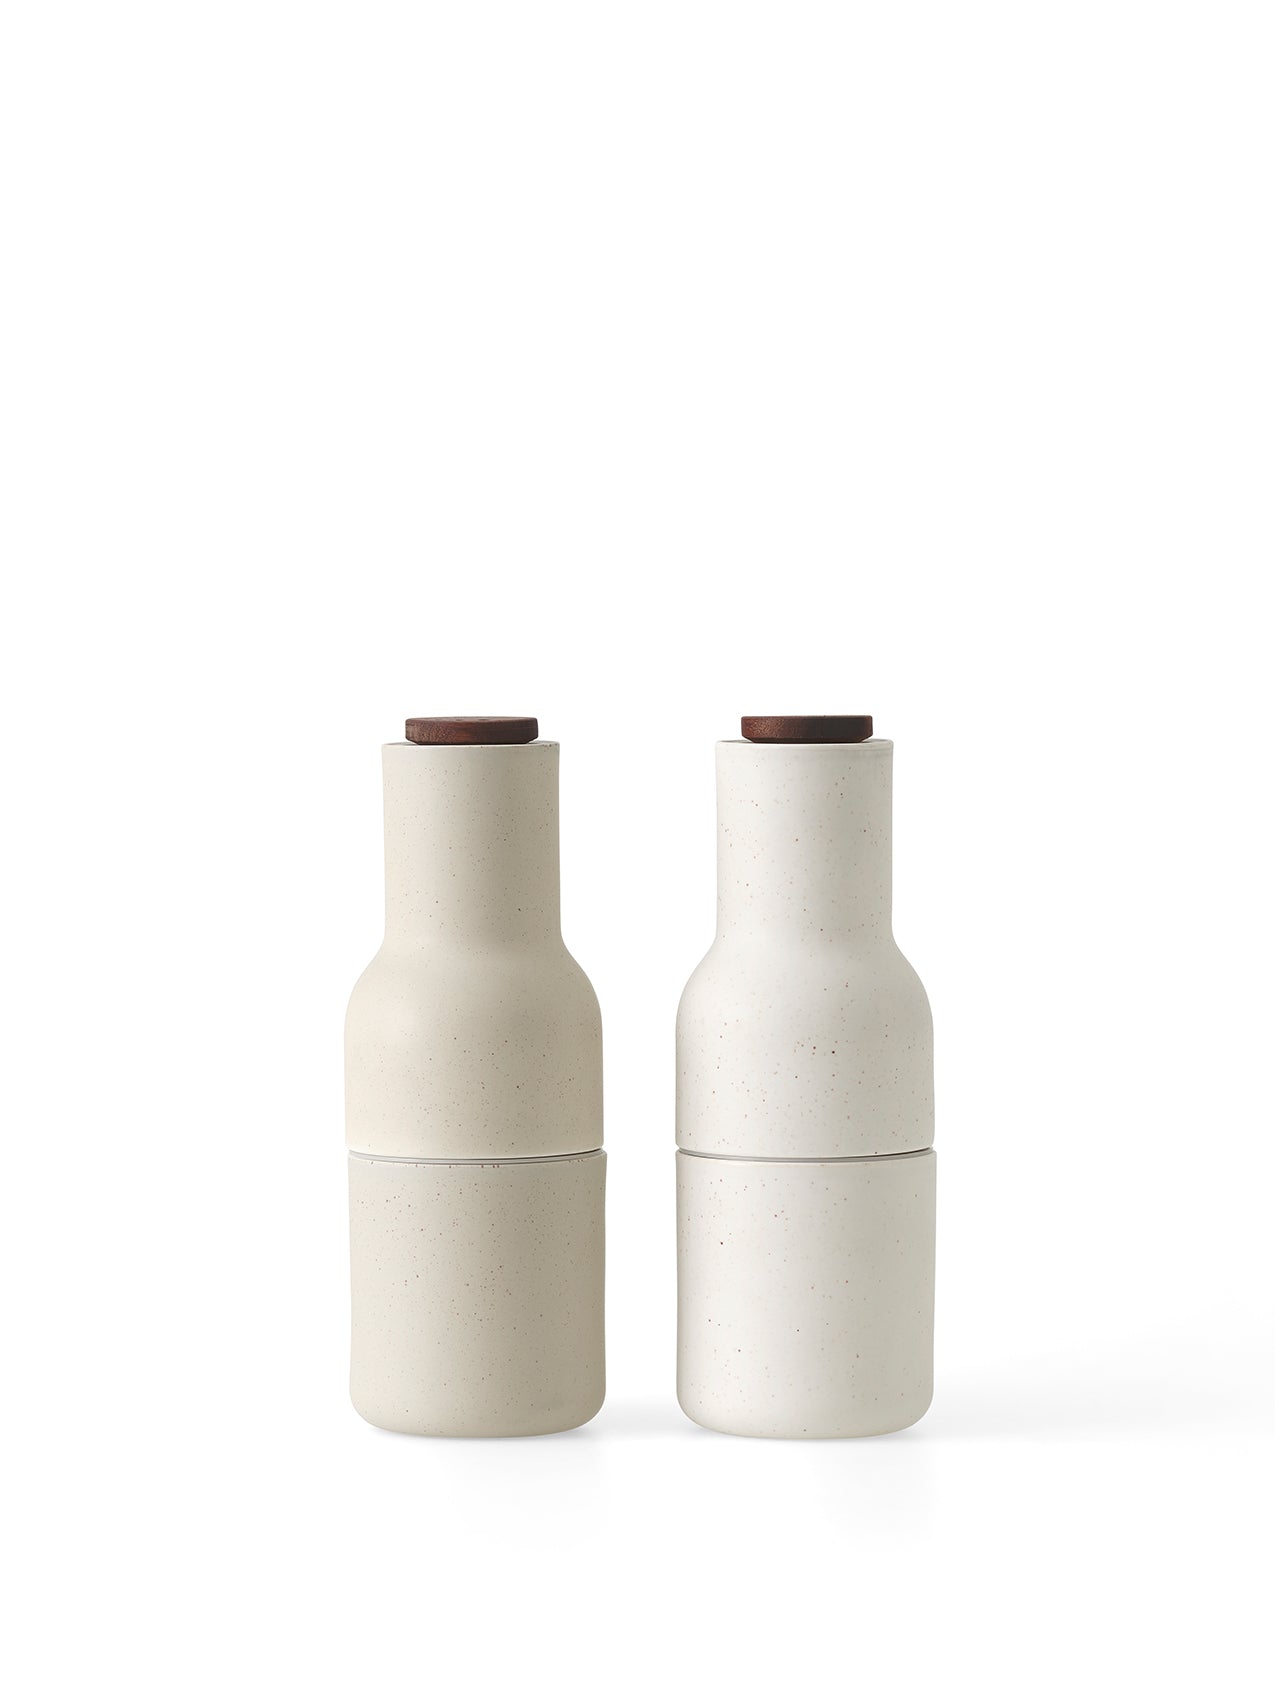 Bottle Grinder, Ceramic, 2 pcs.